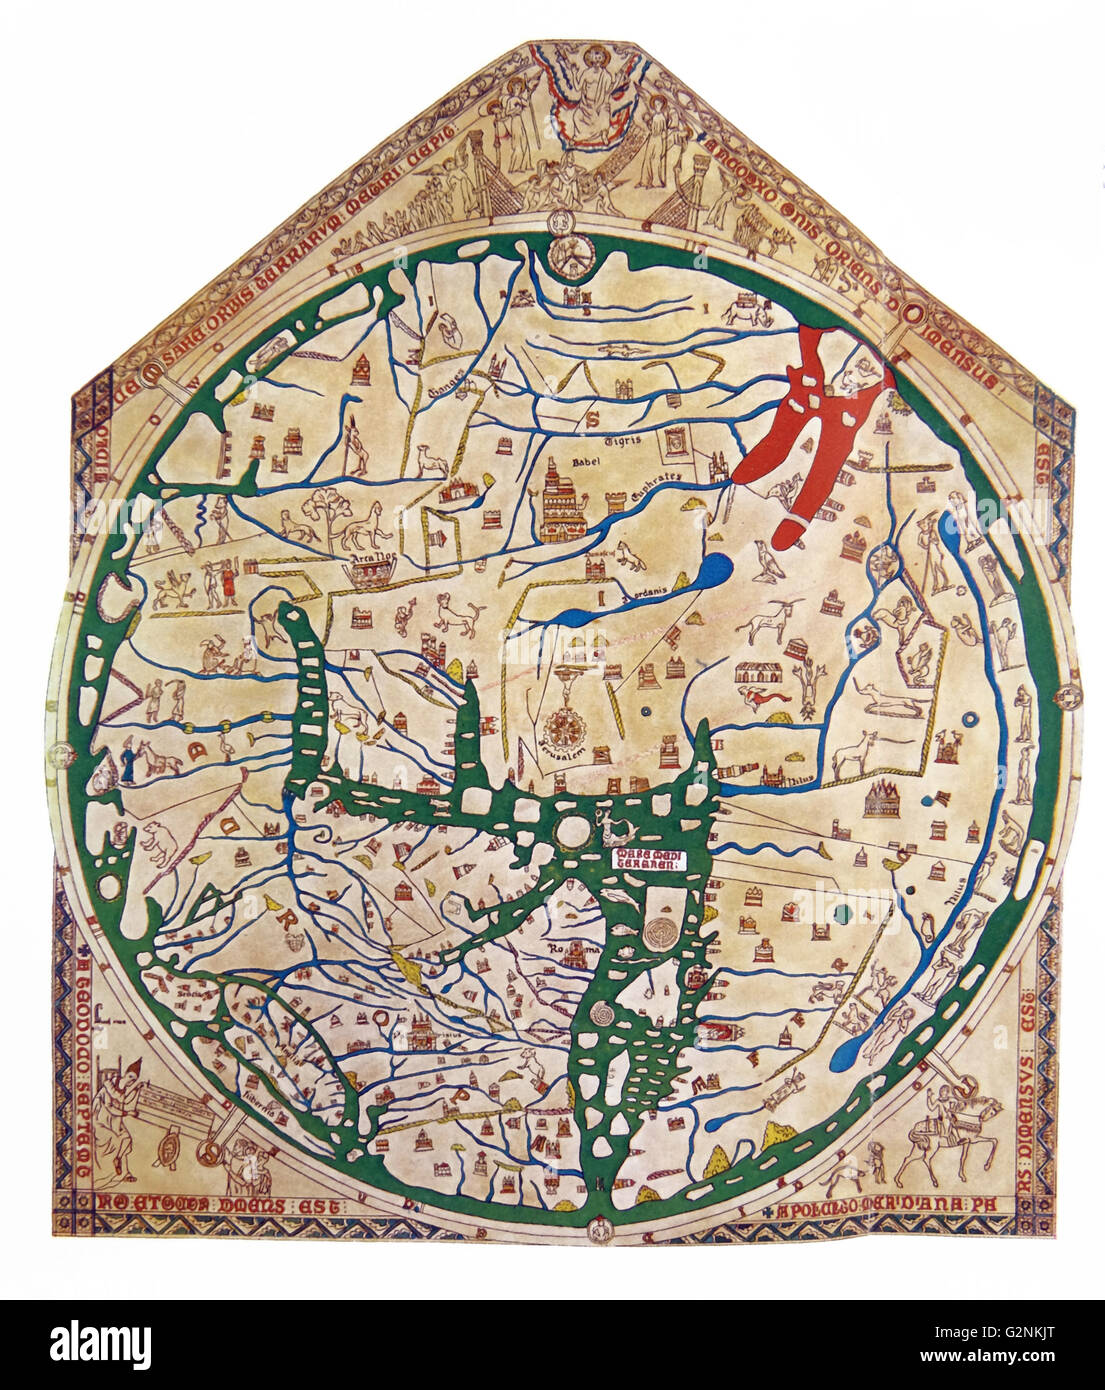 The Hereford Mappa Mundi of 1280. Stock Photo